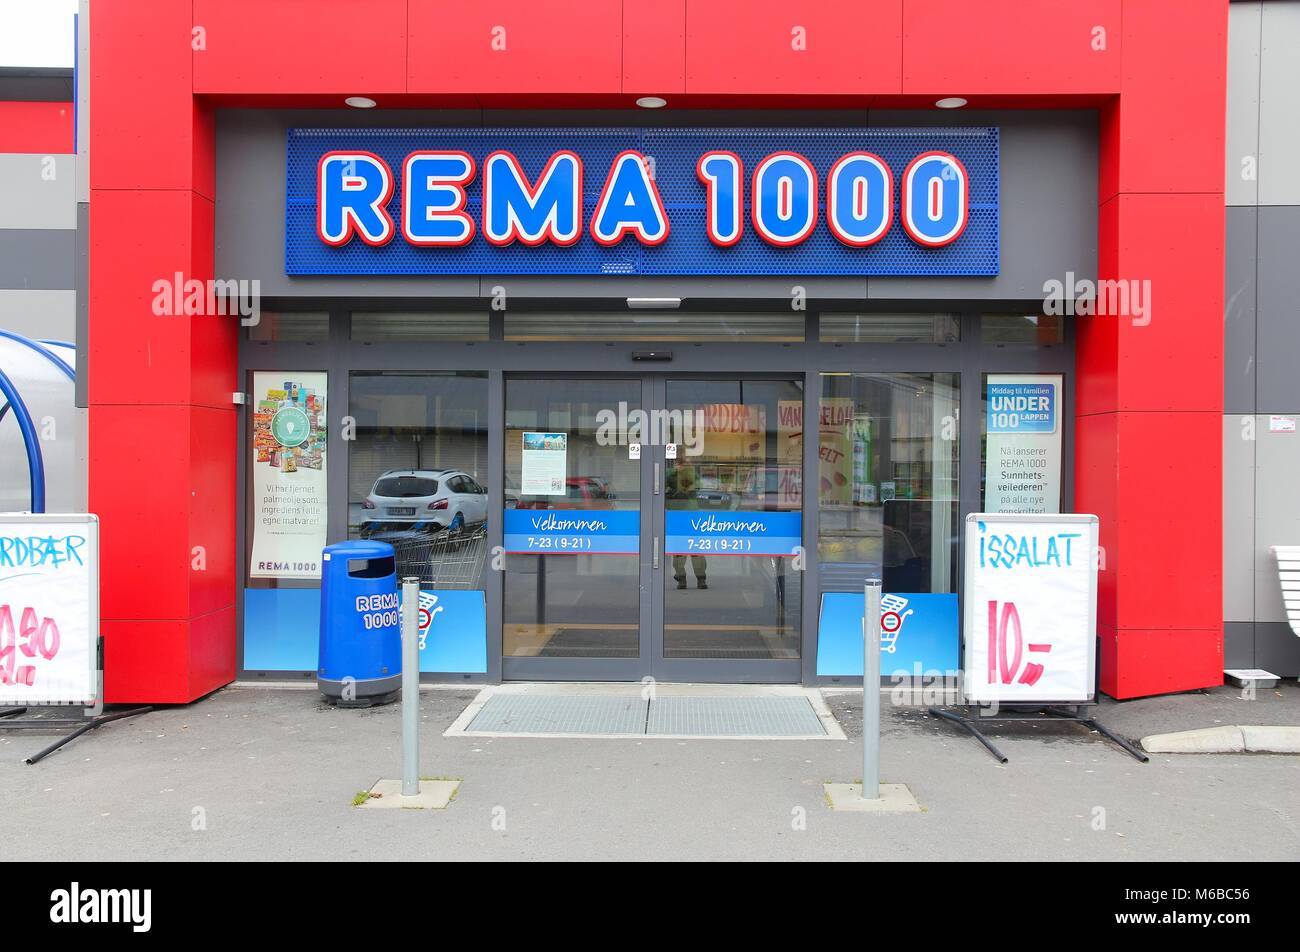 hovedlandet Desværre skræmt Rema 1000 hi-res stock photography and images - Alamy